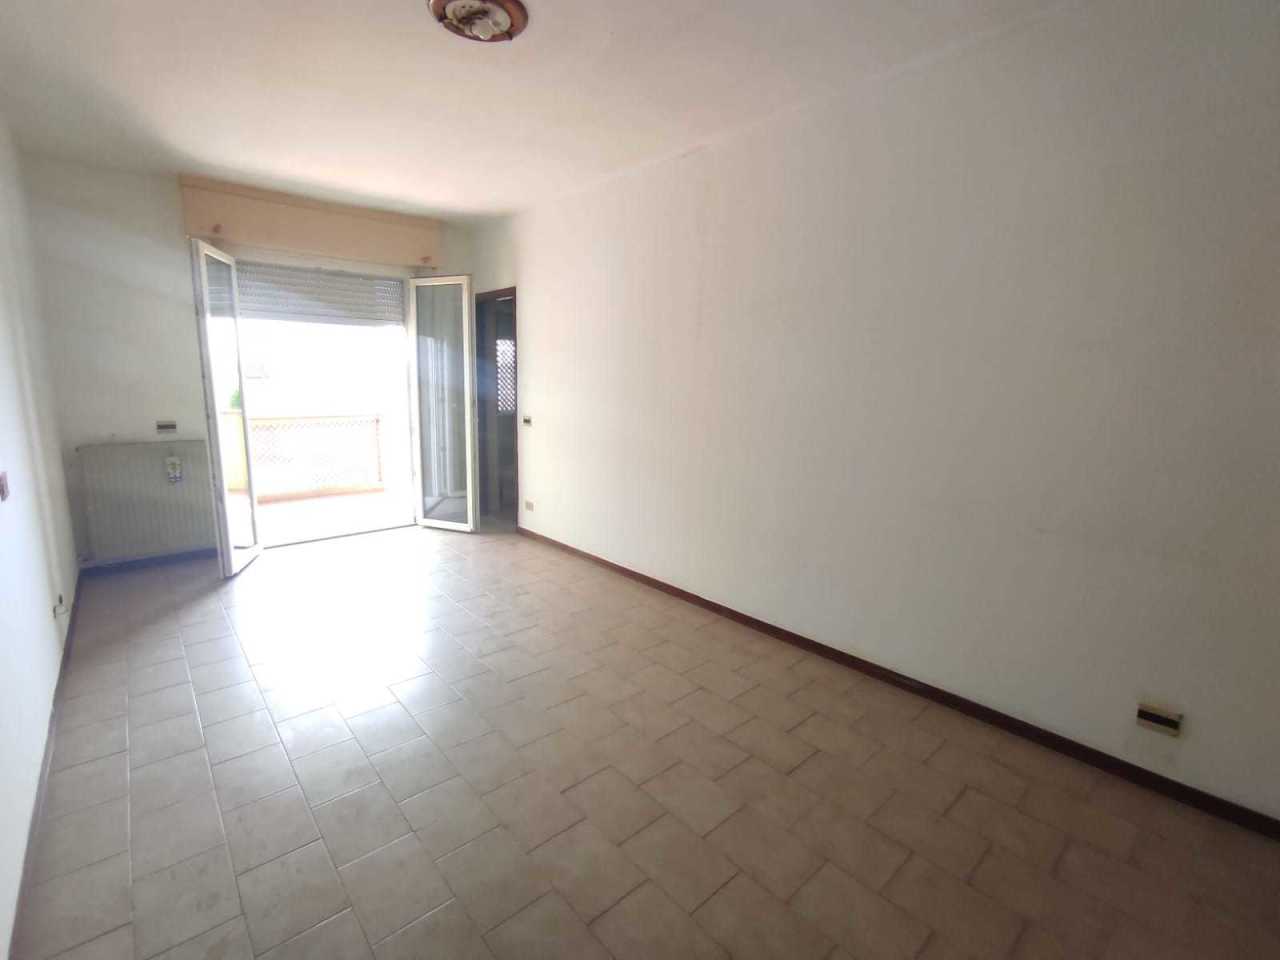 Appartamento in vendita a Ortonovo, 2 locali, prezzo € 83.000 | PortaleAgenzieImmobiliari.it